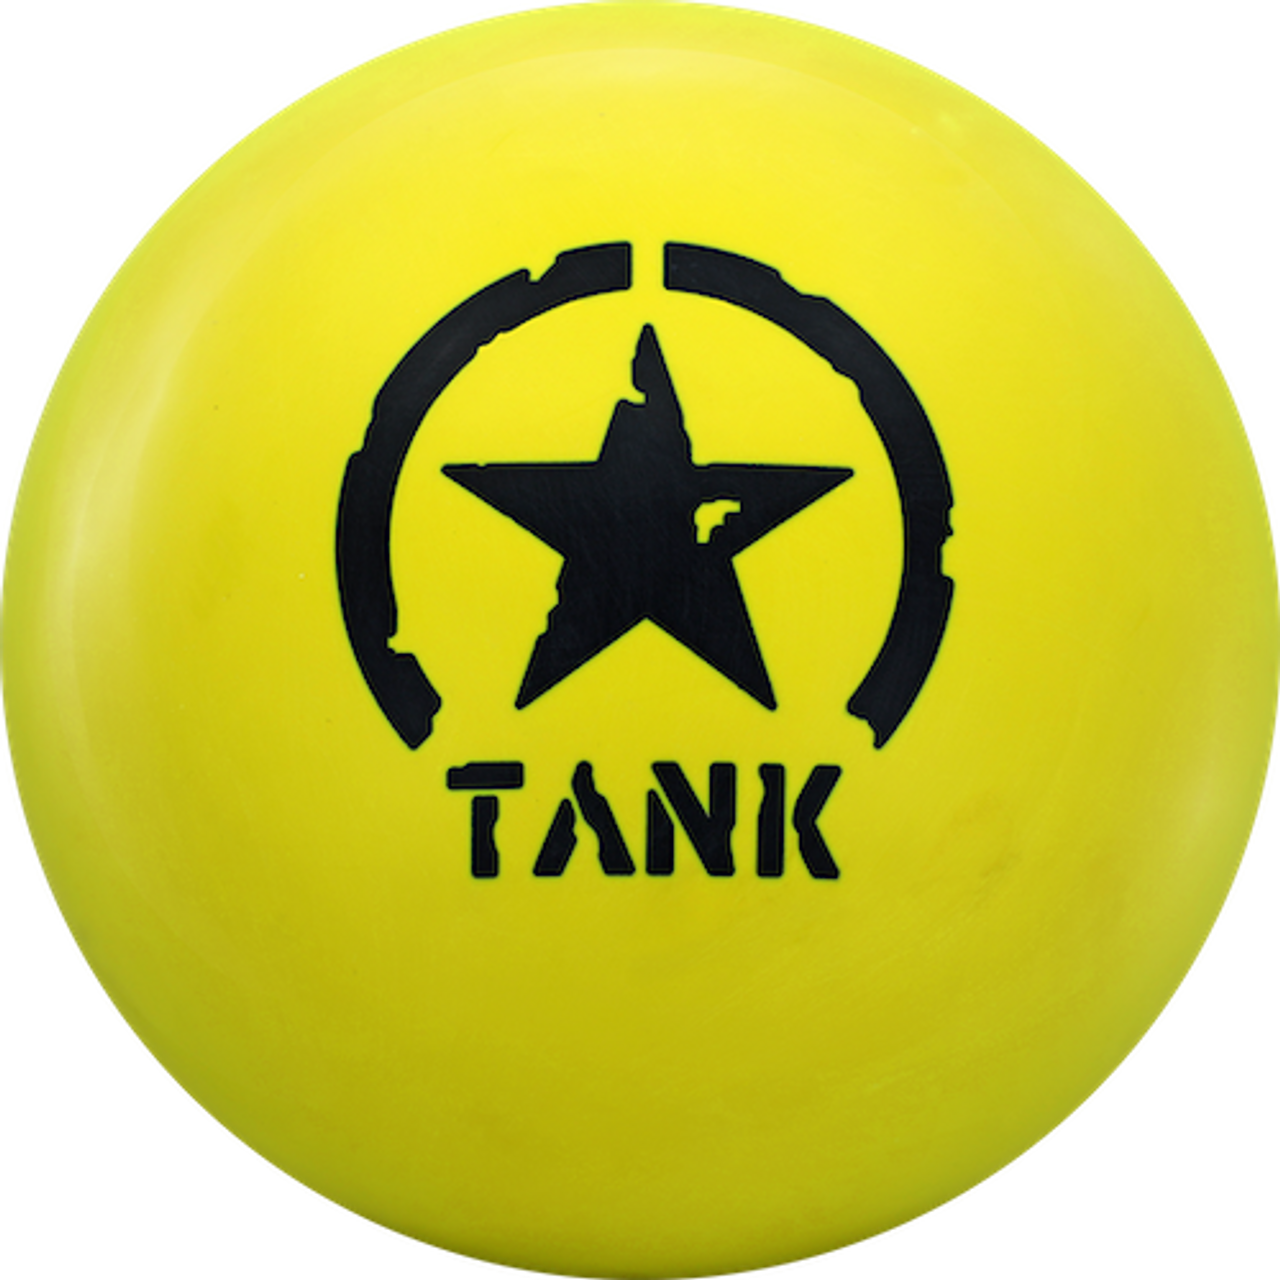 Motiv Tank Yellowjacket Bowling Ball